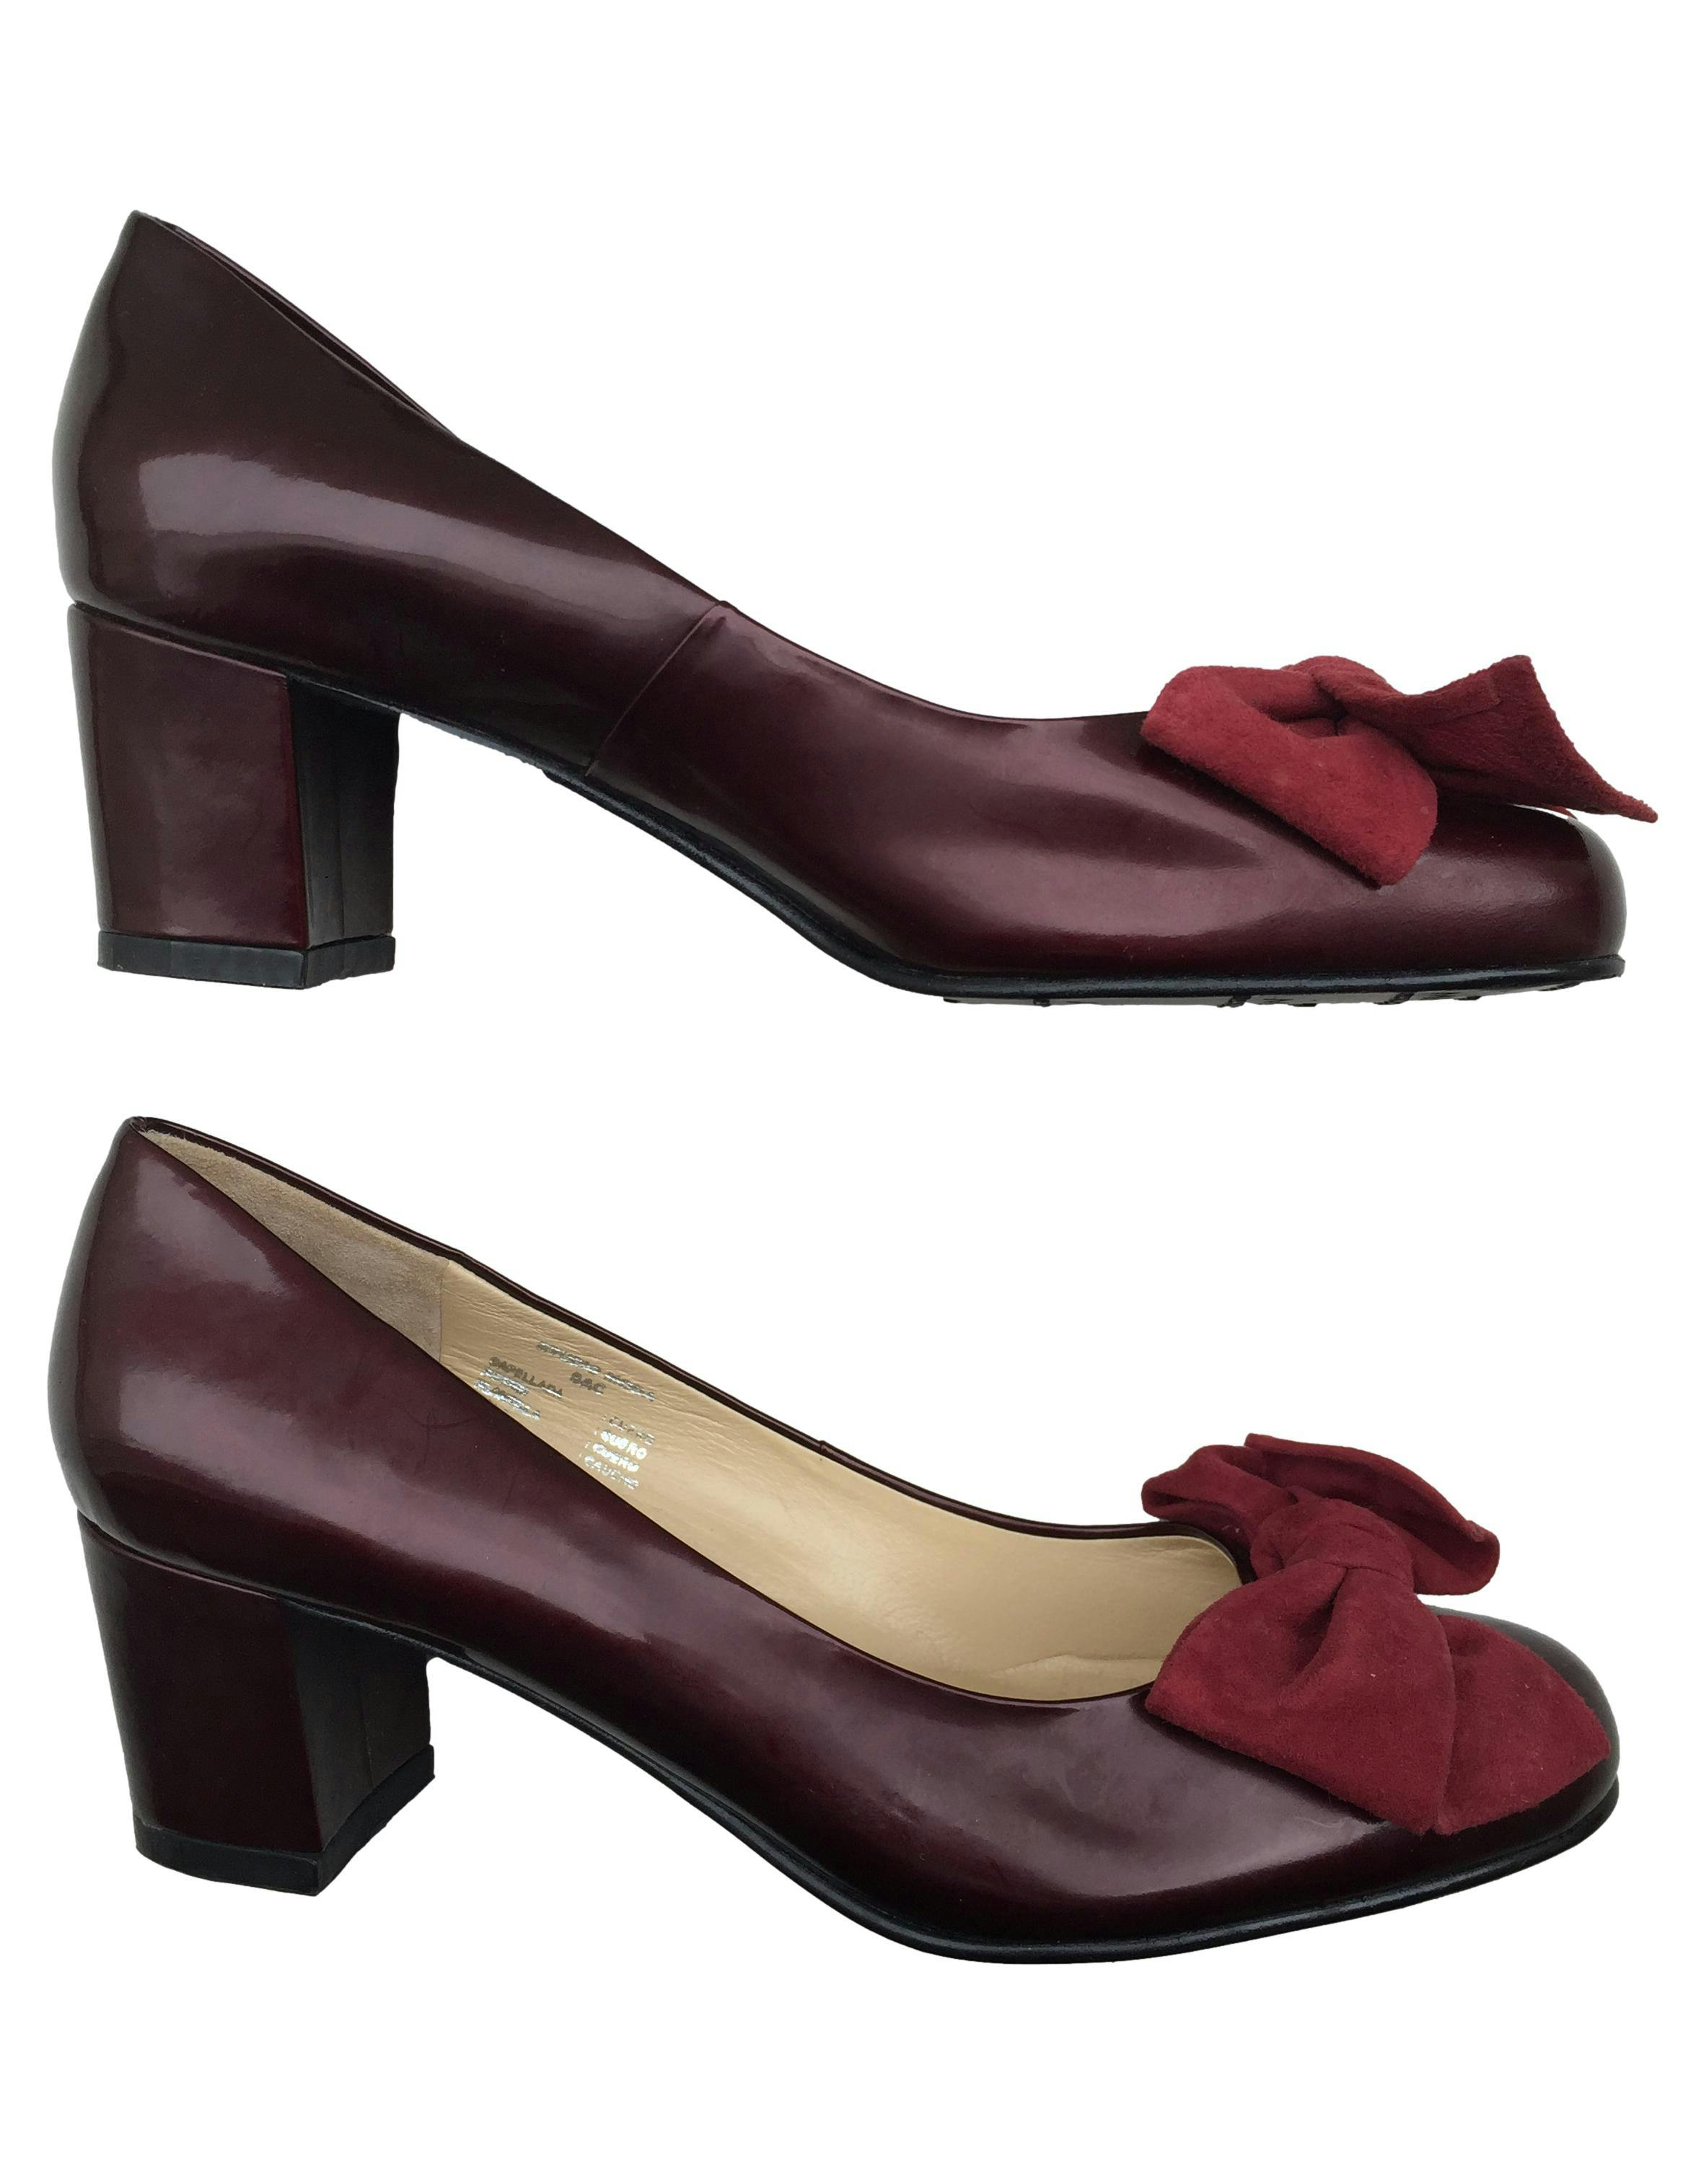 Zapatos de charol guinda Milano Bags, de cuero con taco grueso. Estado 9/10 por desgaste mínimo en suela. Taco 6 cm.